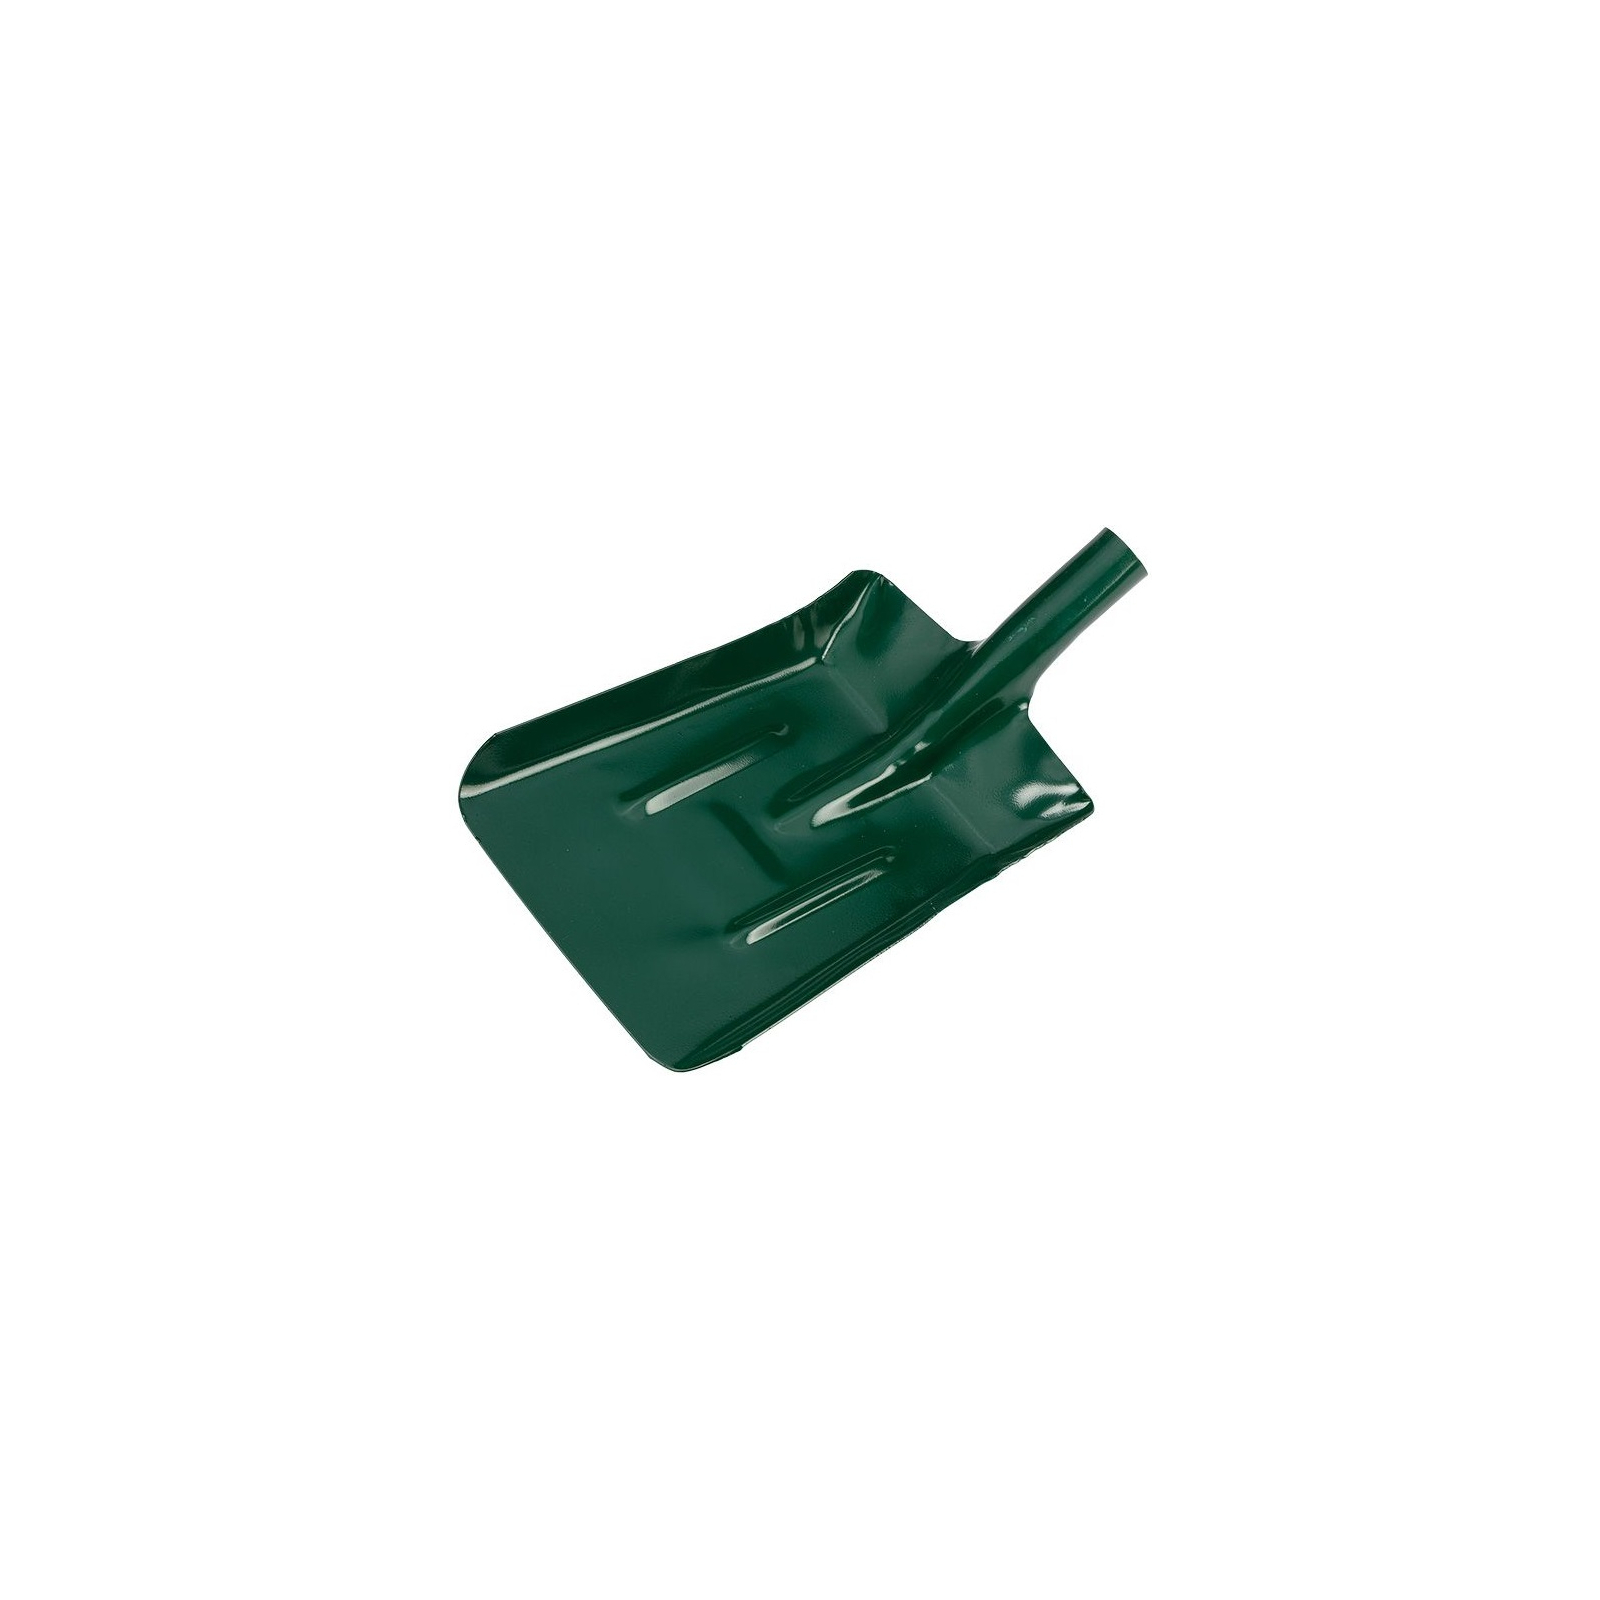 Лопата Verto совкова, без руків'я, 23см, 1.5кг, зелений (15G020)